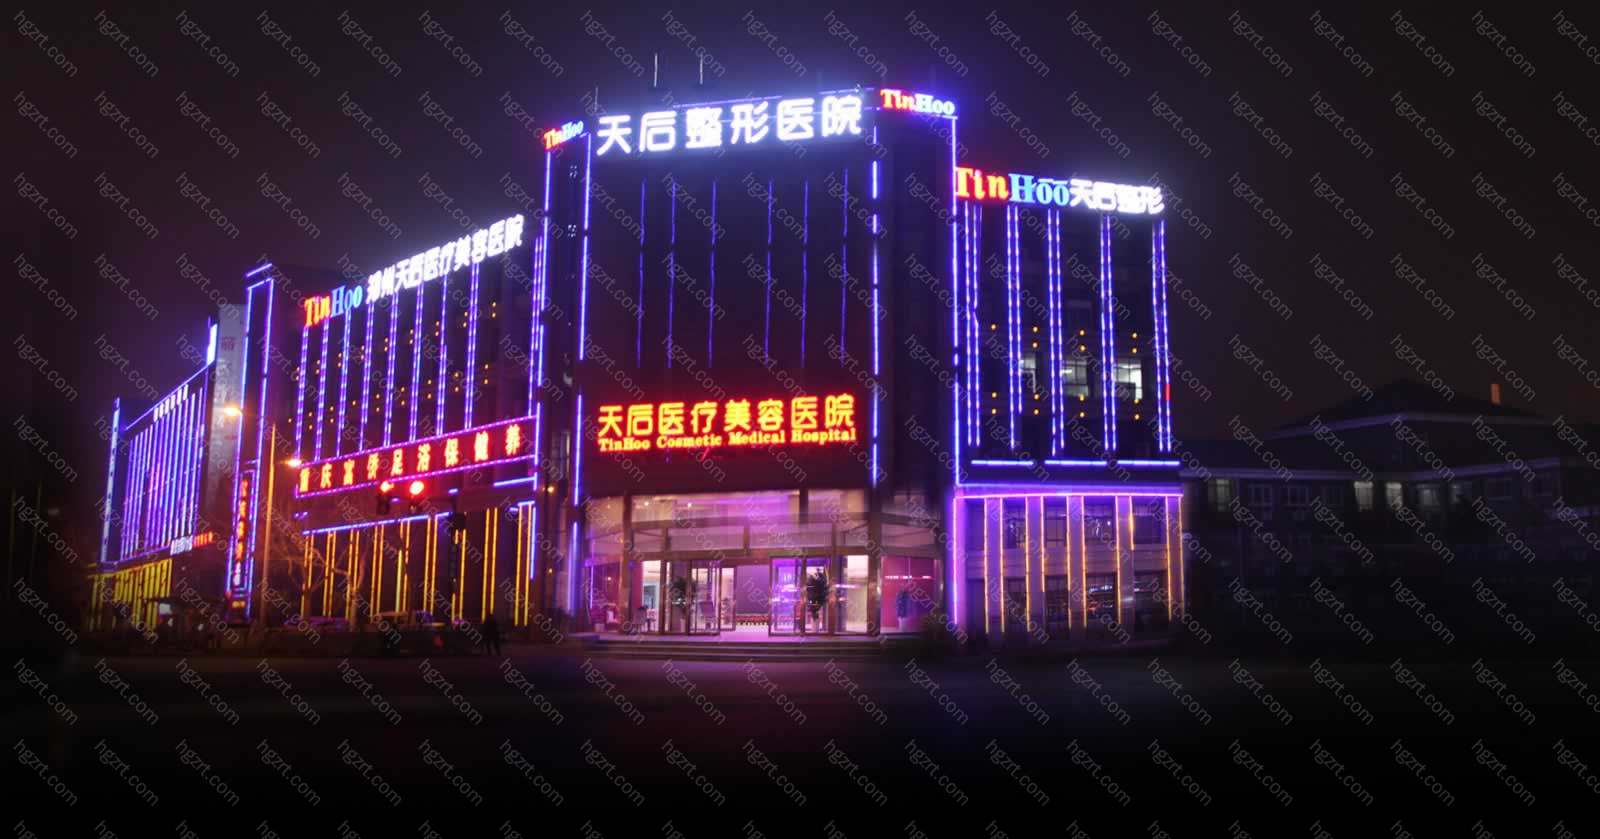 郑州天后整形医院位于郑州市管城回民区郑东新区黄河南路113-25